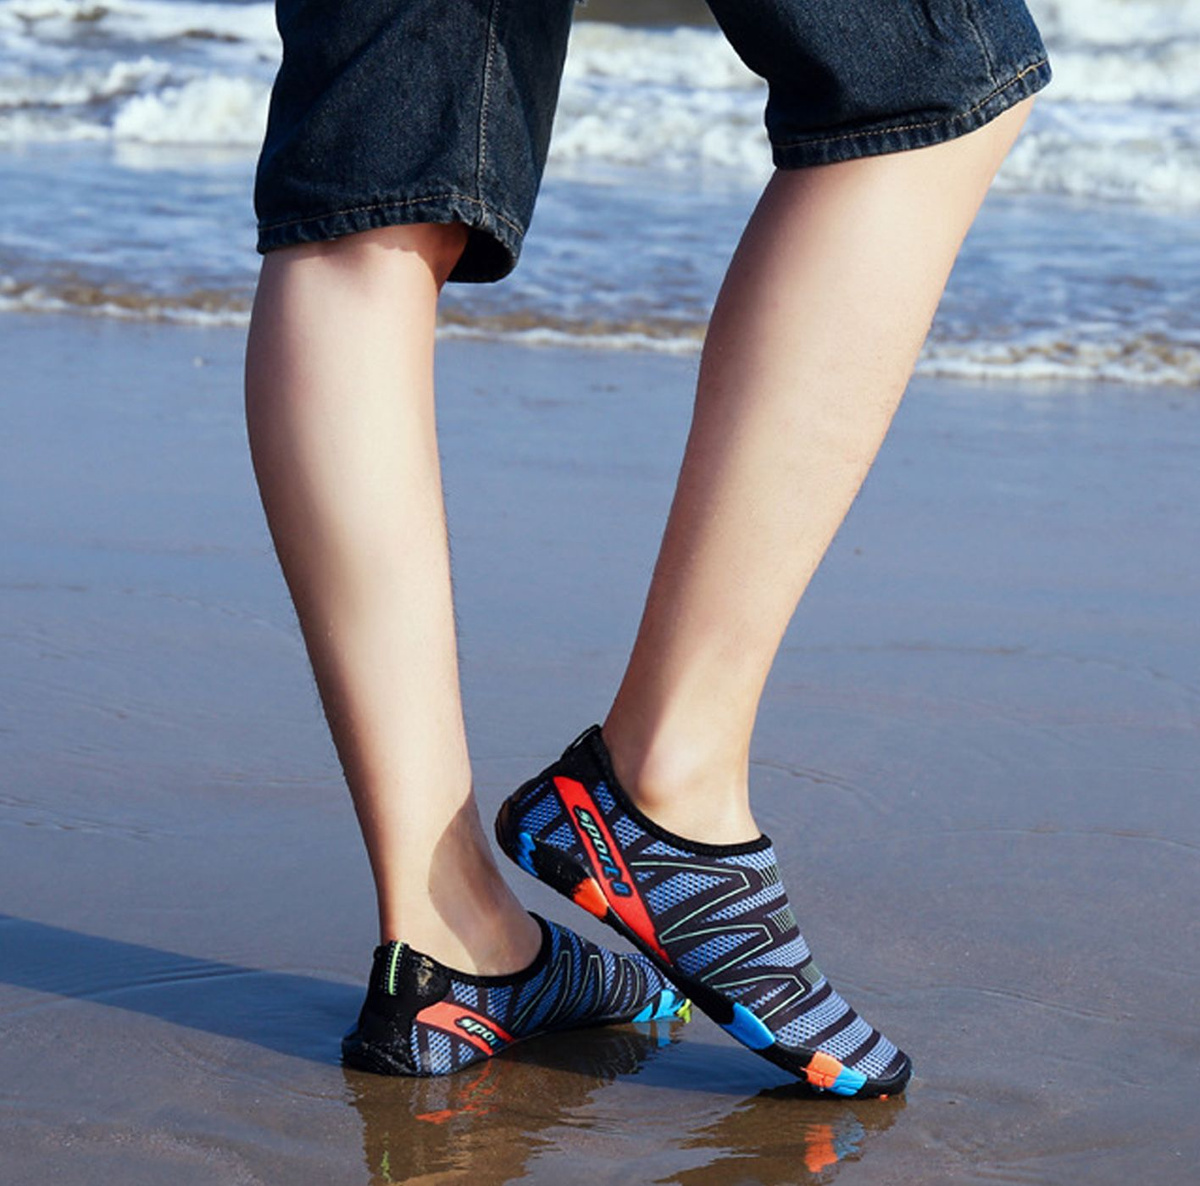 Защита стопы от повреждений и инфекций. Отличное решение для купания и прогулок по пляжу.